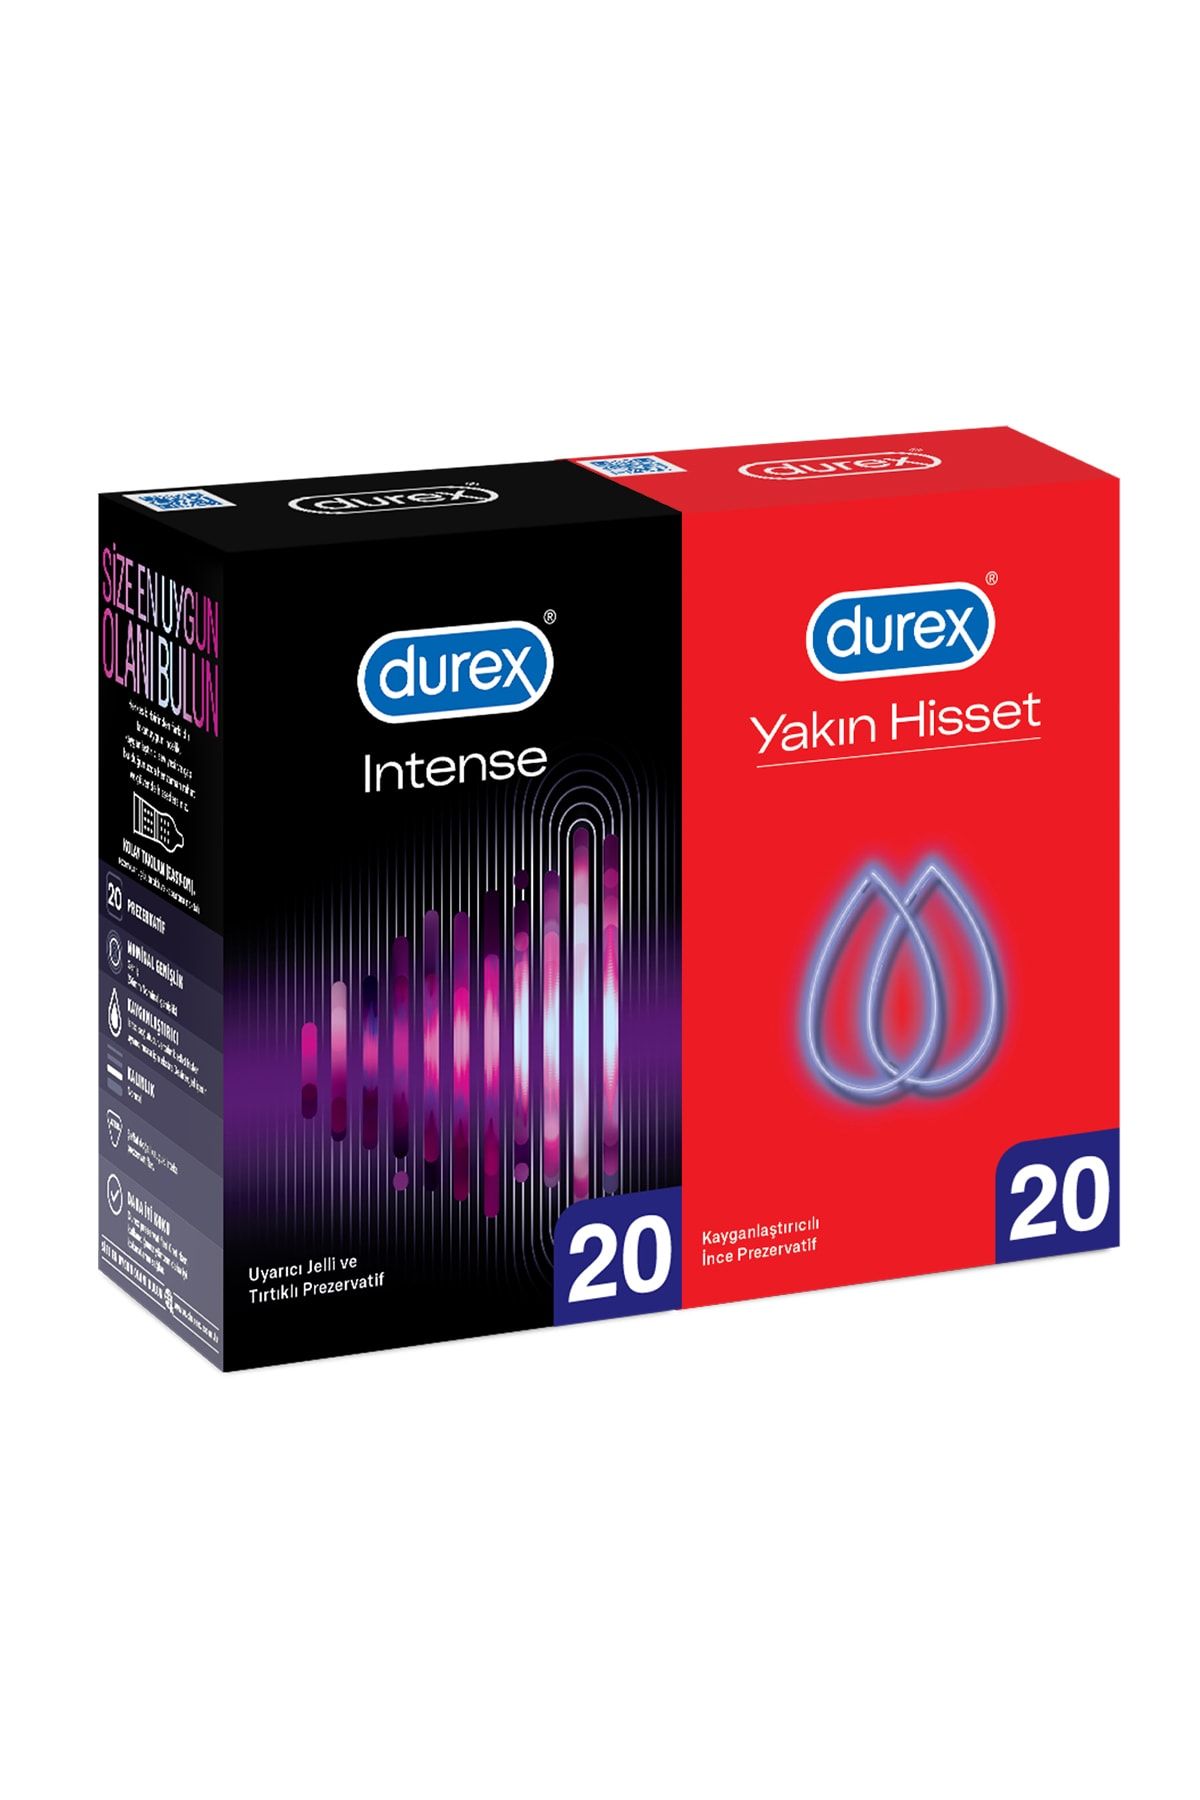 Durex Intense 20’li + Durex Yakın Hisset 20’li Prezervatif Avantaj Paketi